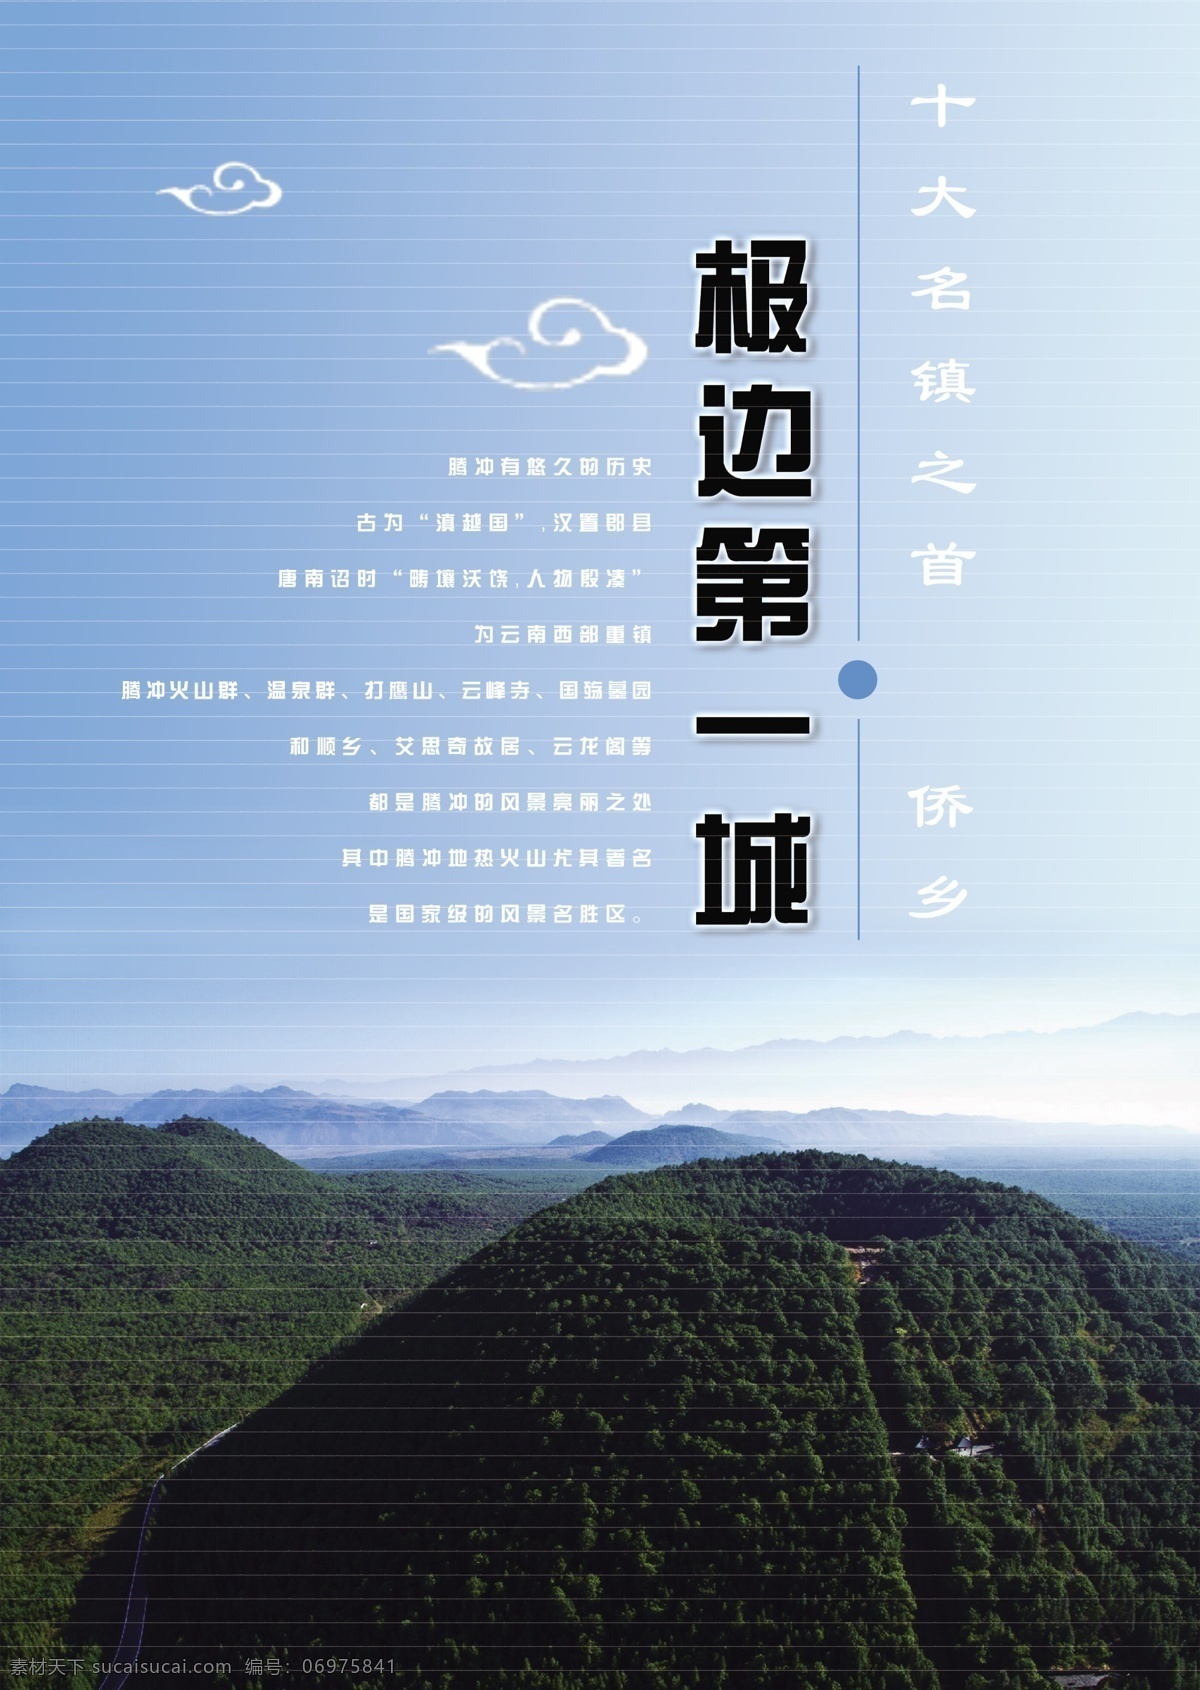 腾冲 旅游 画册 封面设计 文字排版 图片色彩 梦幻 黑色